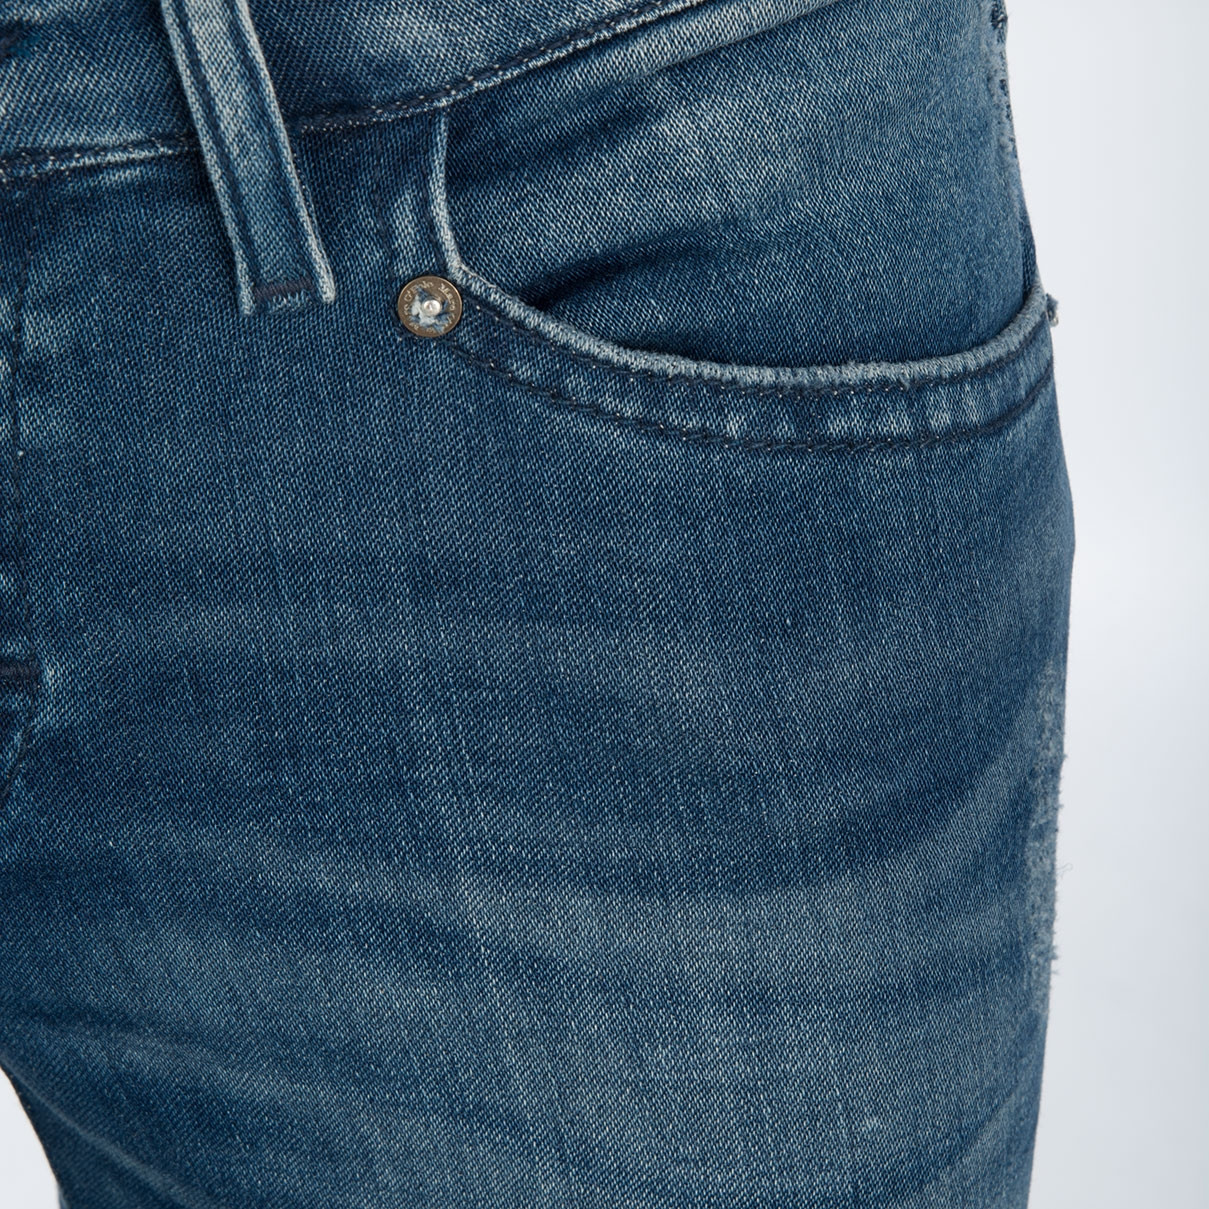 Jeans - Low - Skara - Skinny online im bei meinfischer.de kaufen - Mein Fischer